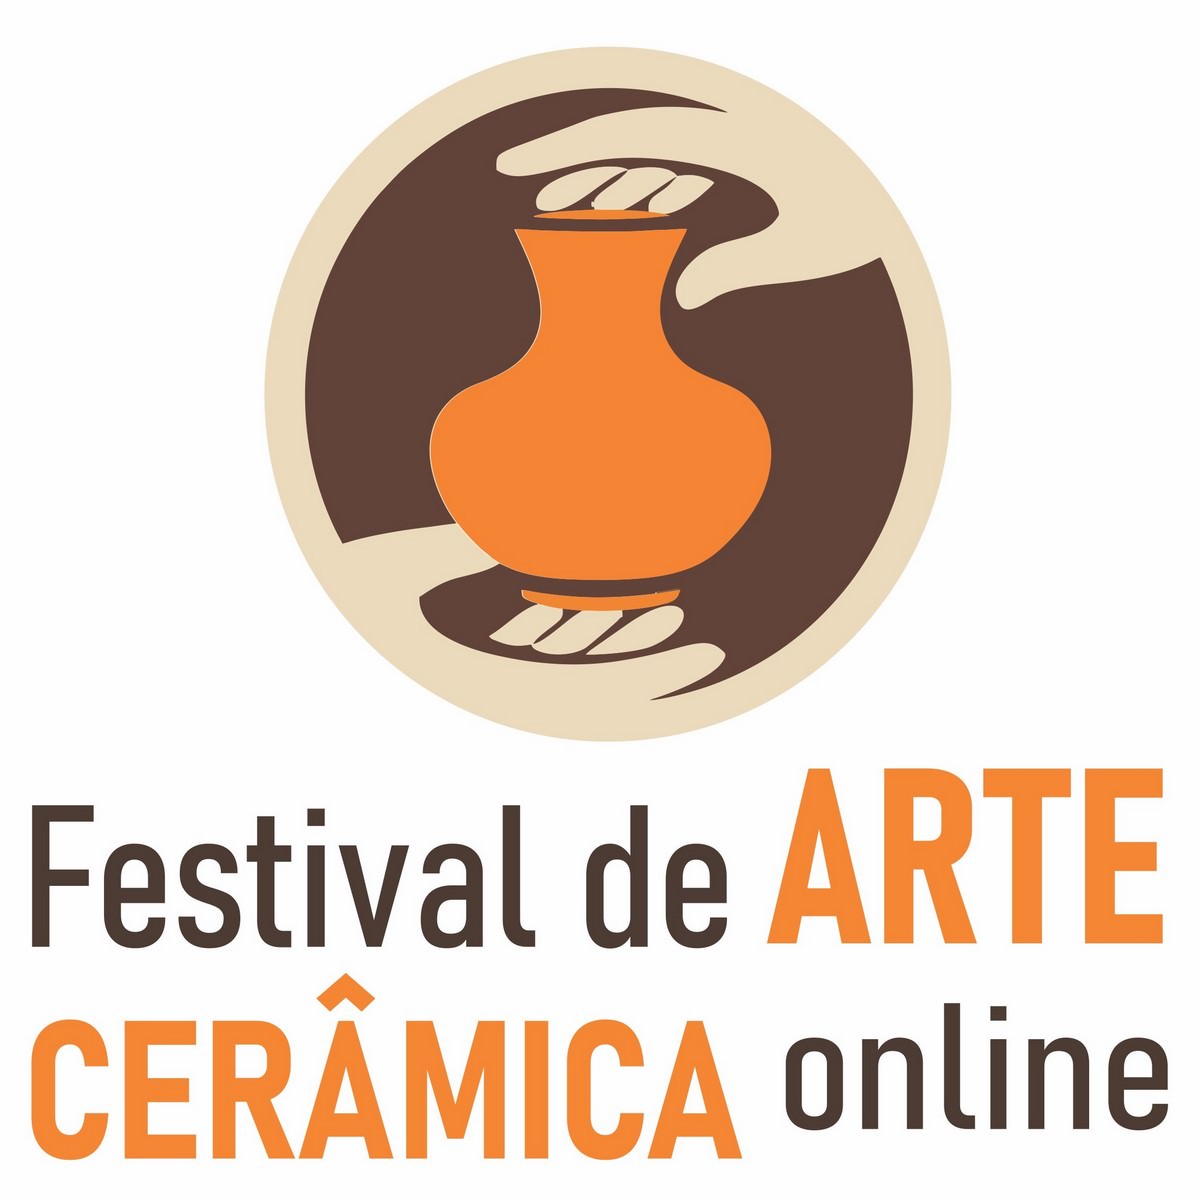 Festival de Arte Cerâmica Online, logo. Divulgação.